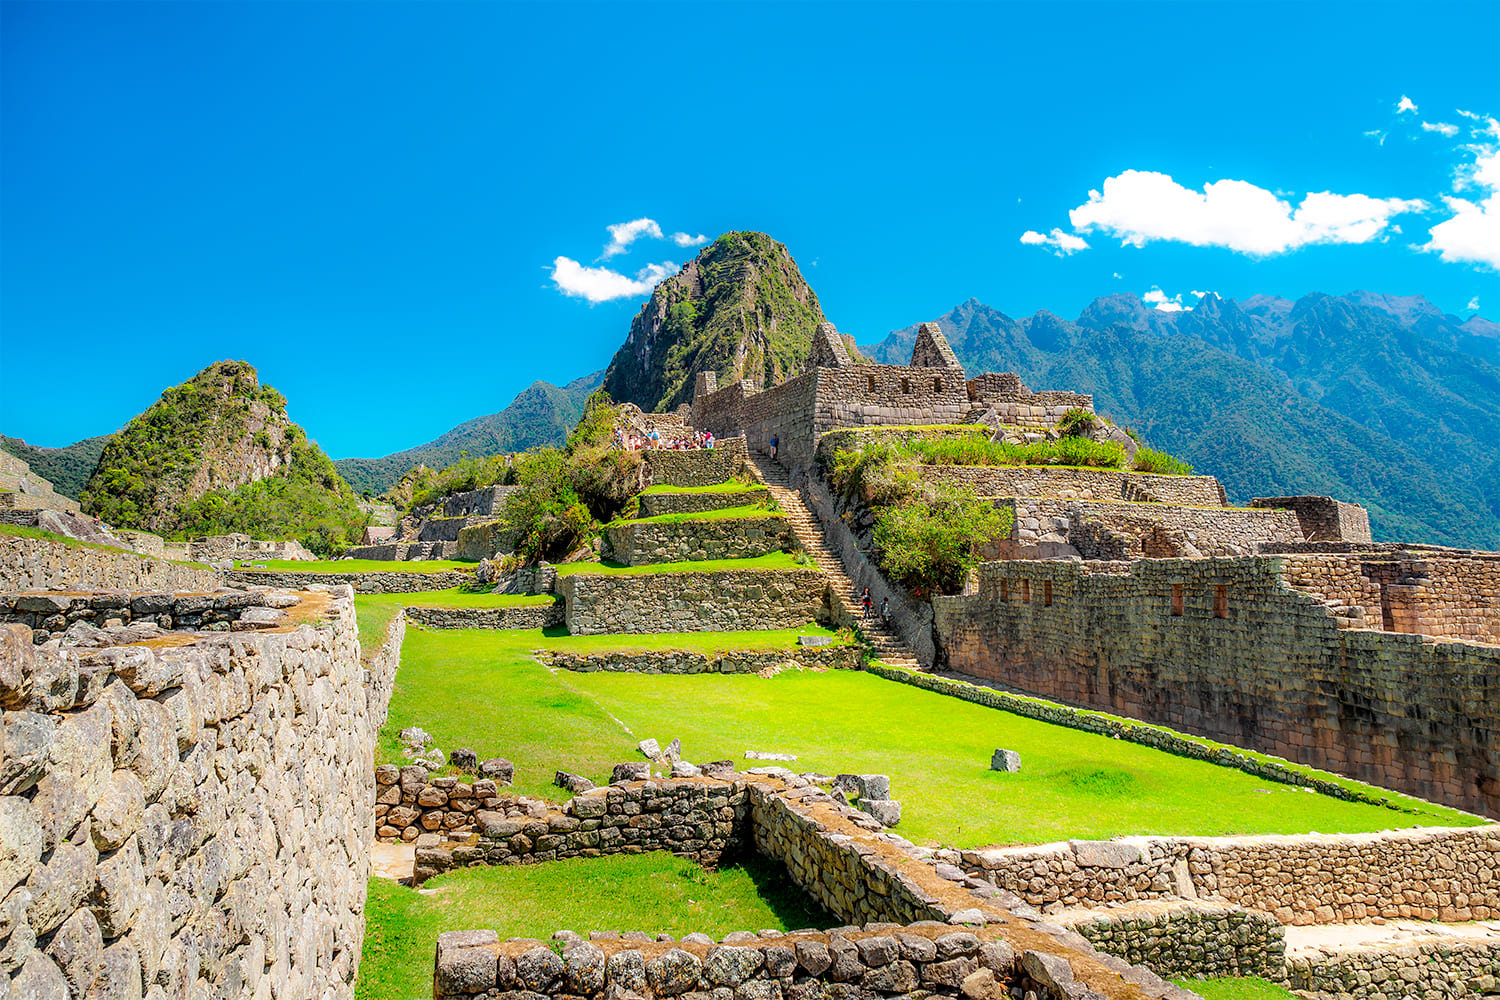 Entrance Llaqta Machu Picchu (Citadel)